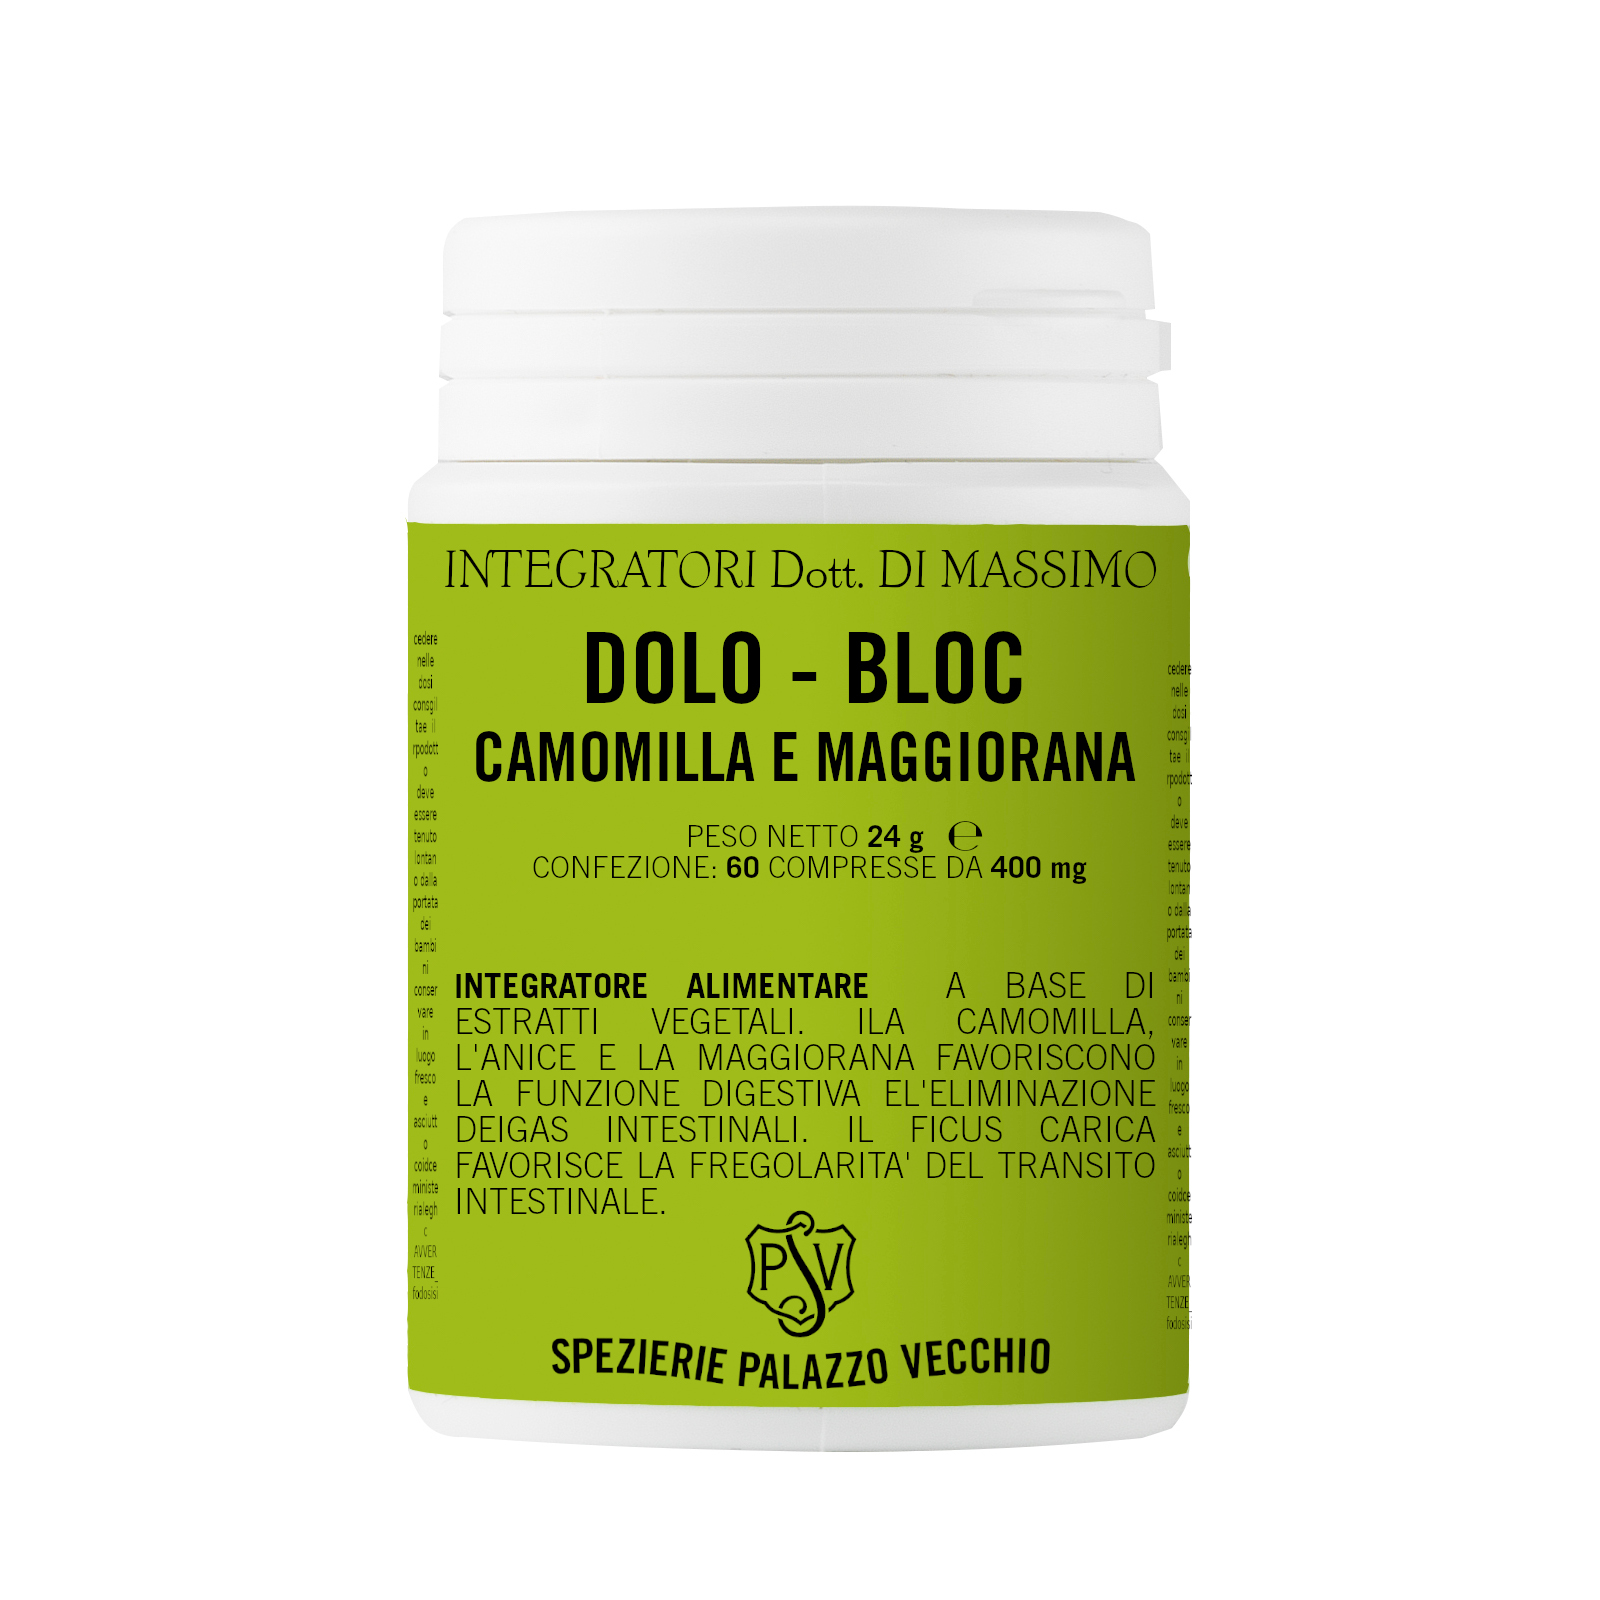 DOLO - BLOC Camomilla - Anice-0